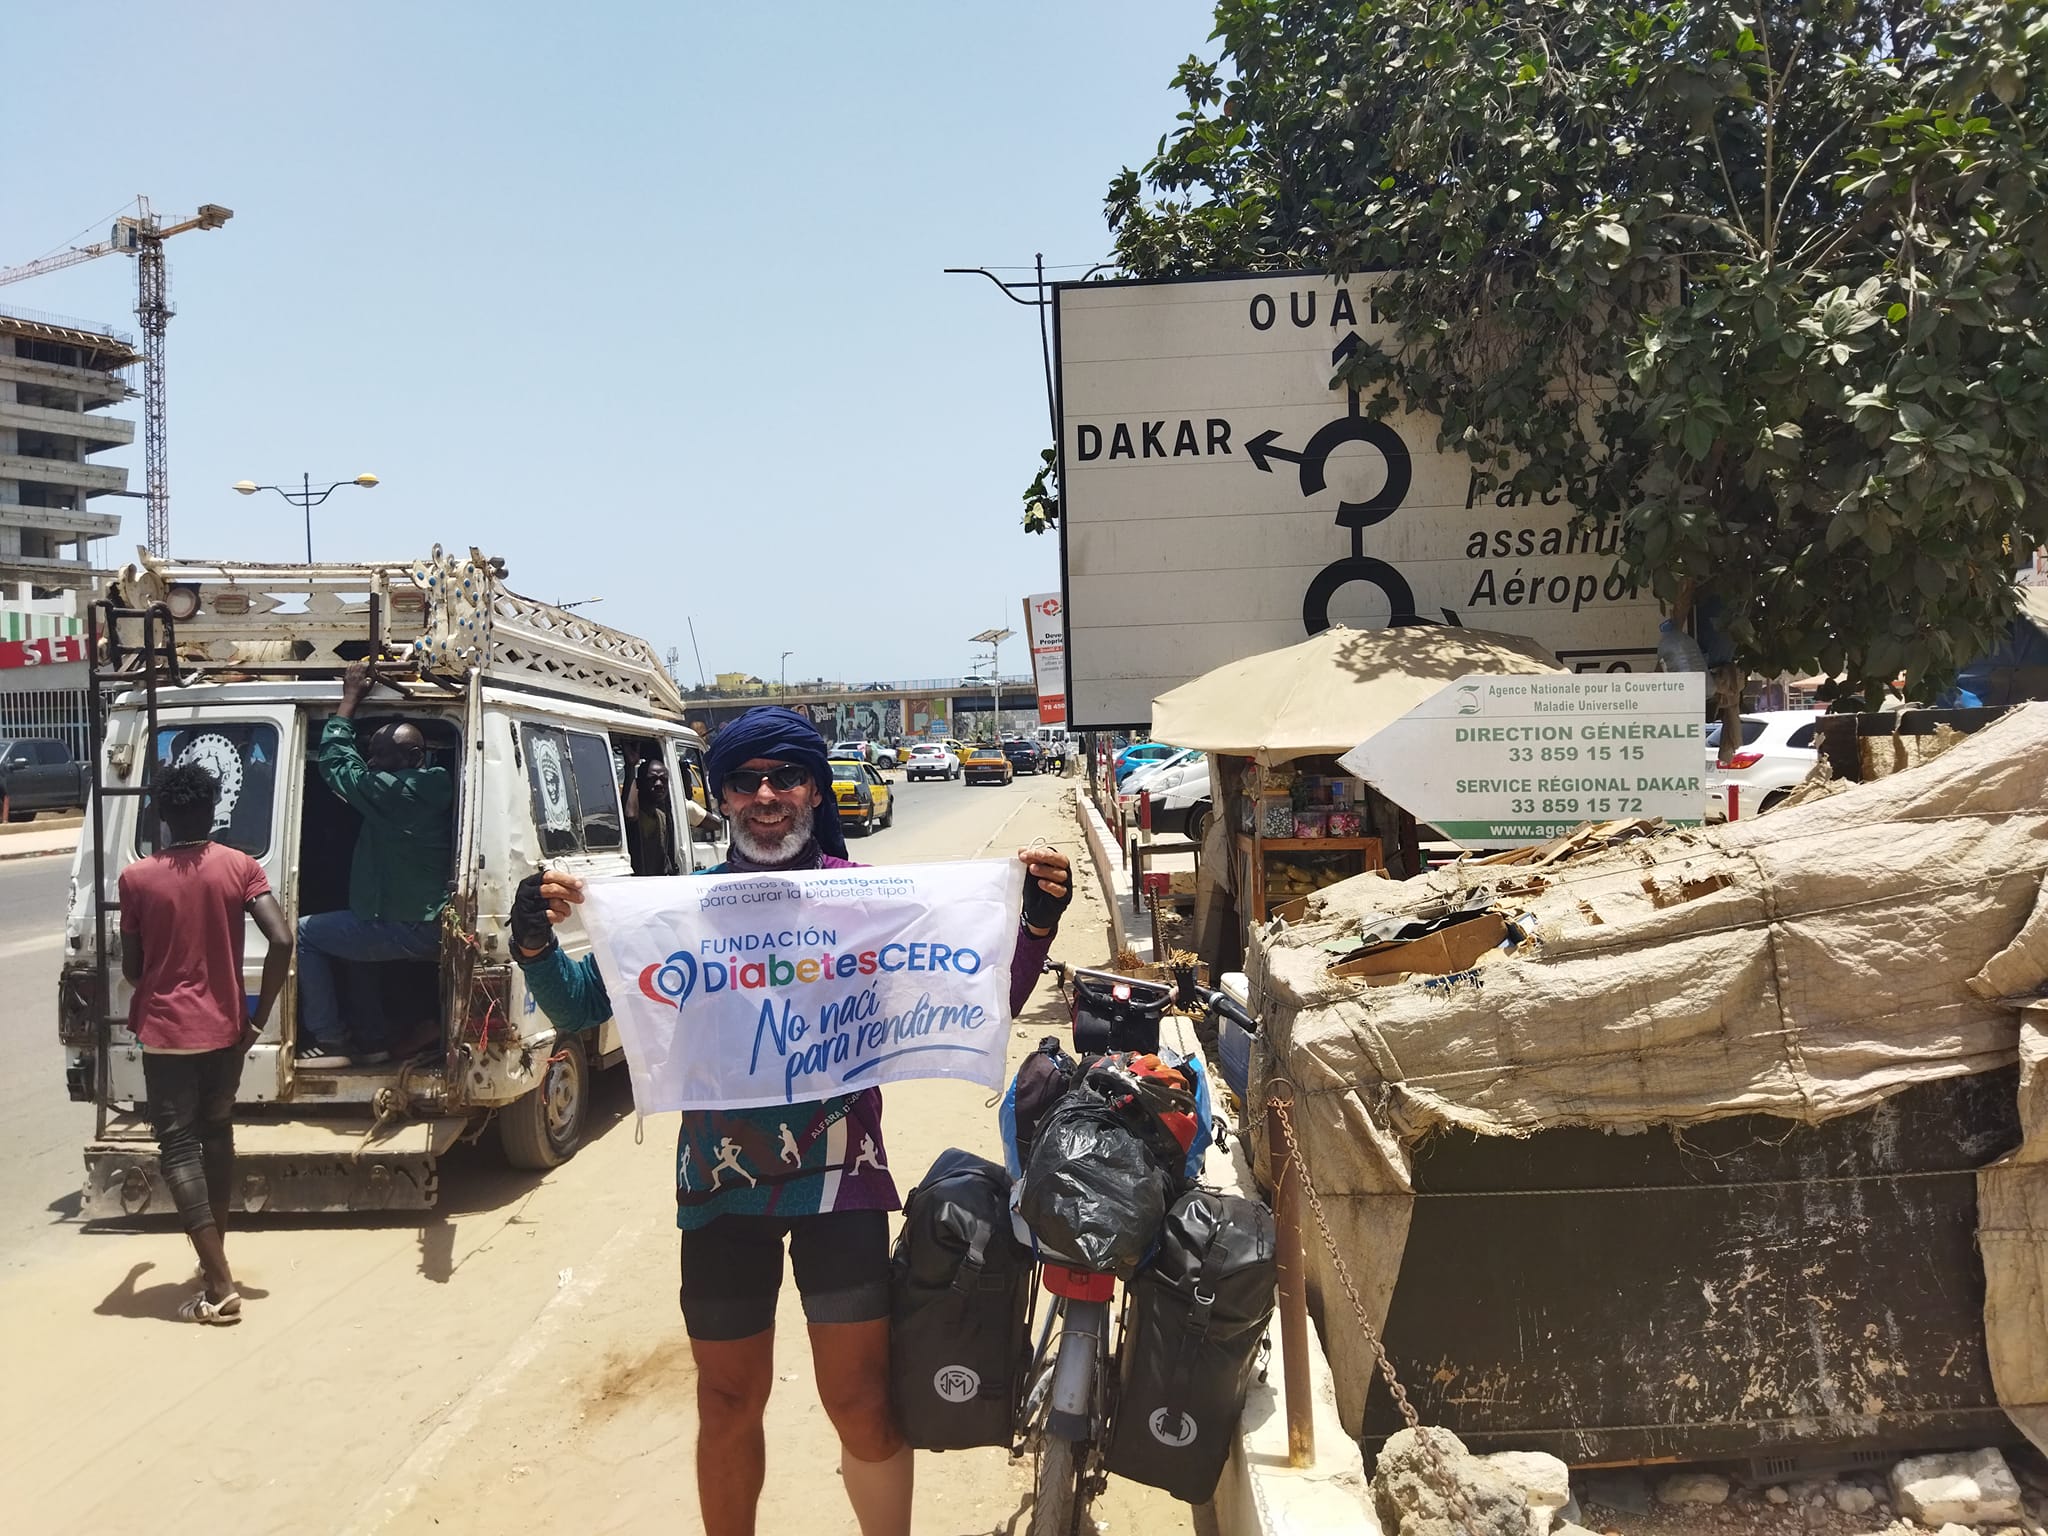 Francisco logra su reto solidario de llegar a Dakar en bici: "Ha sido muy duro, pero gratificante"